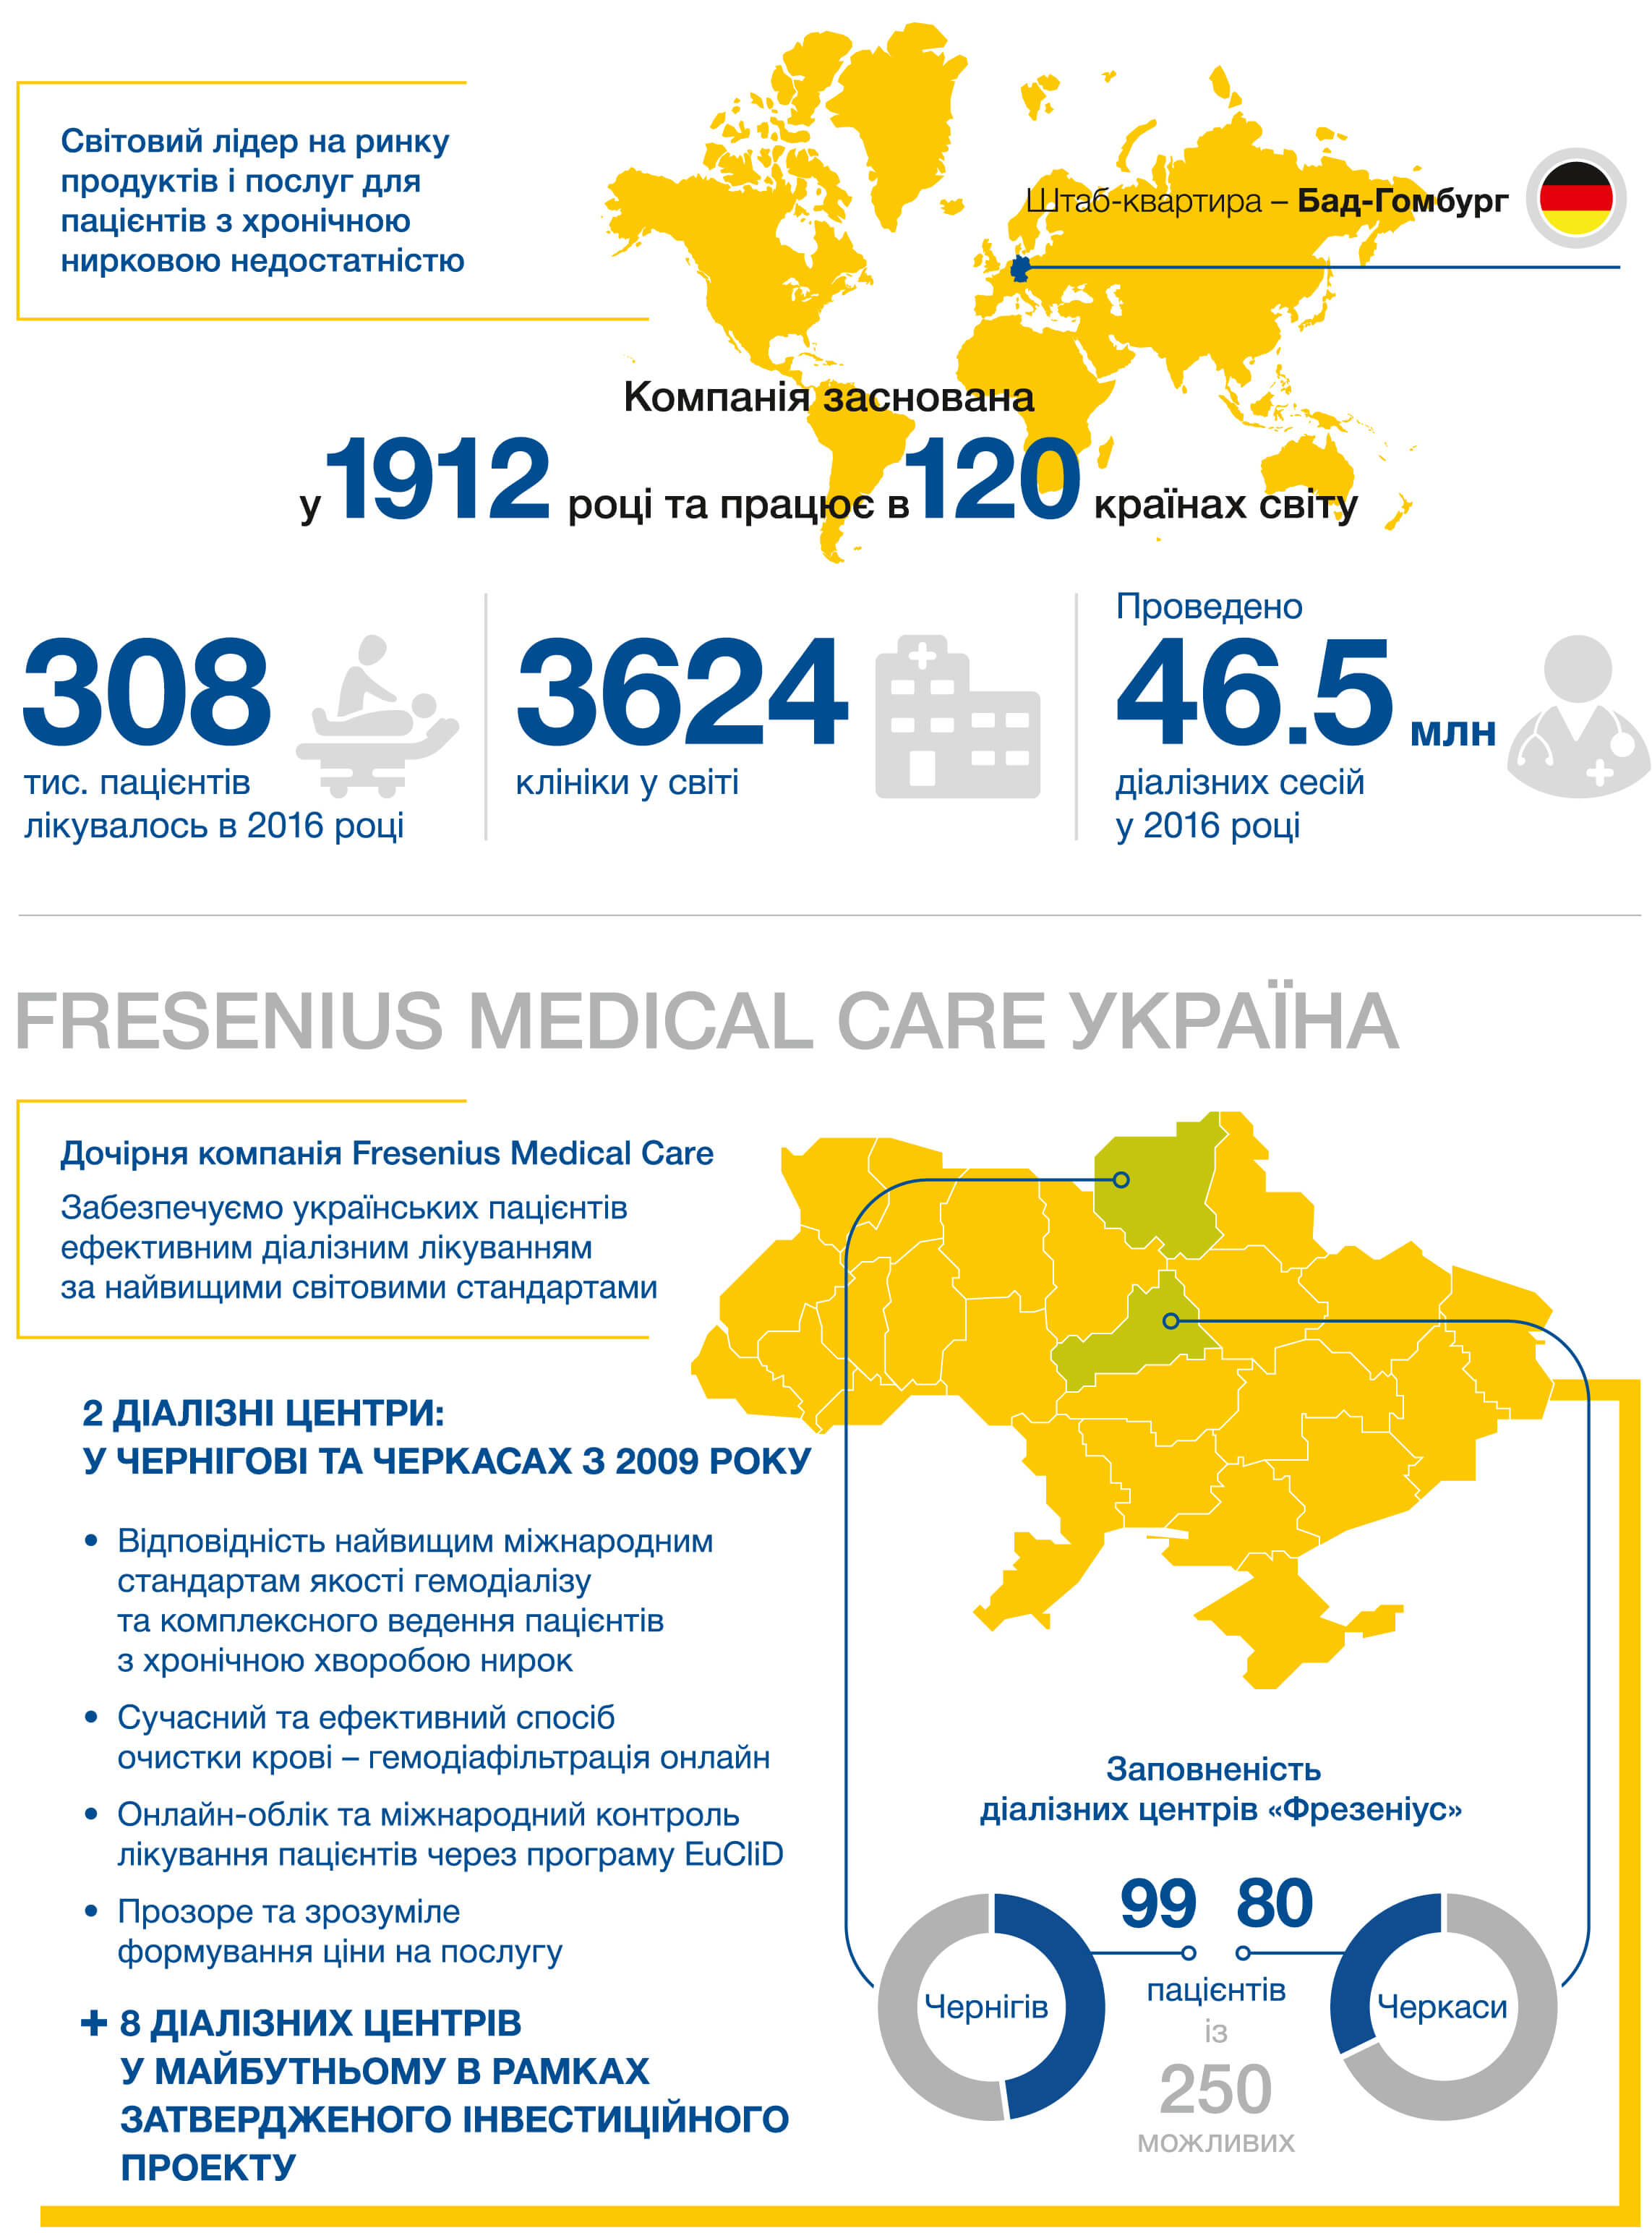  компанія Fresenius Medical Care забезпечує українських пацієнтів